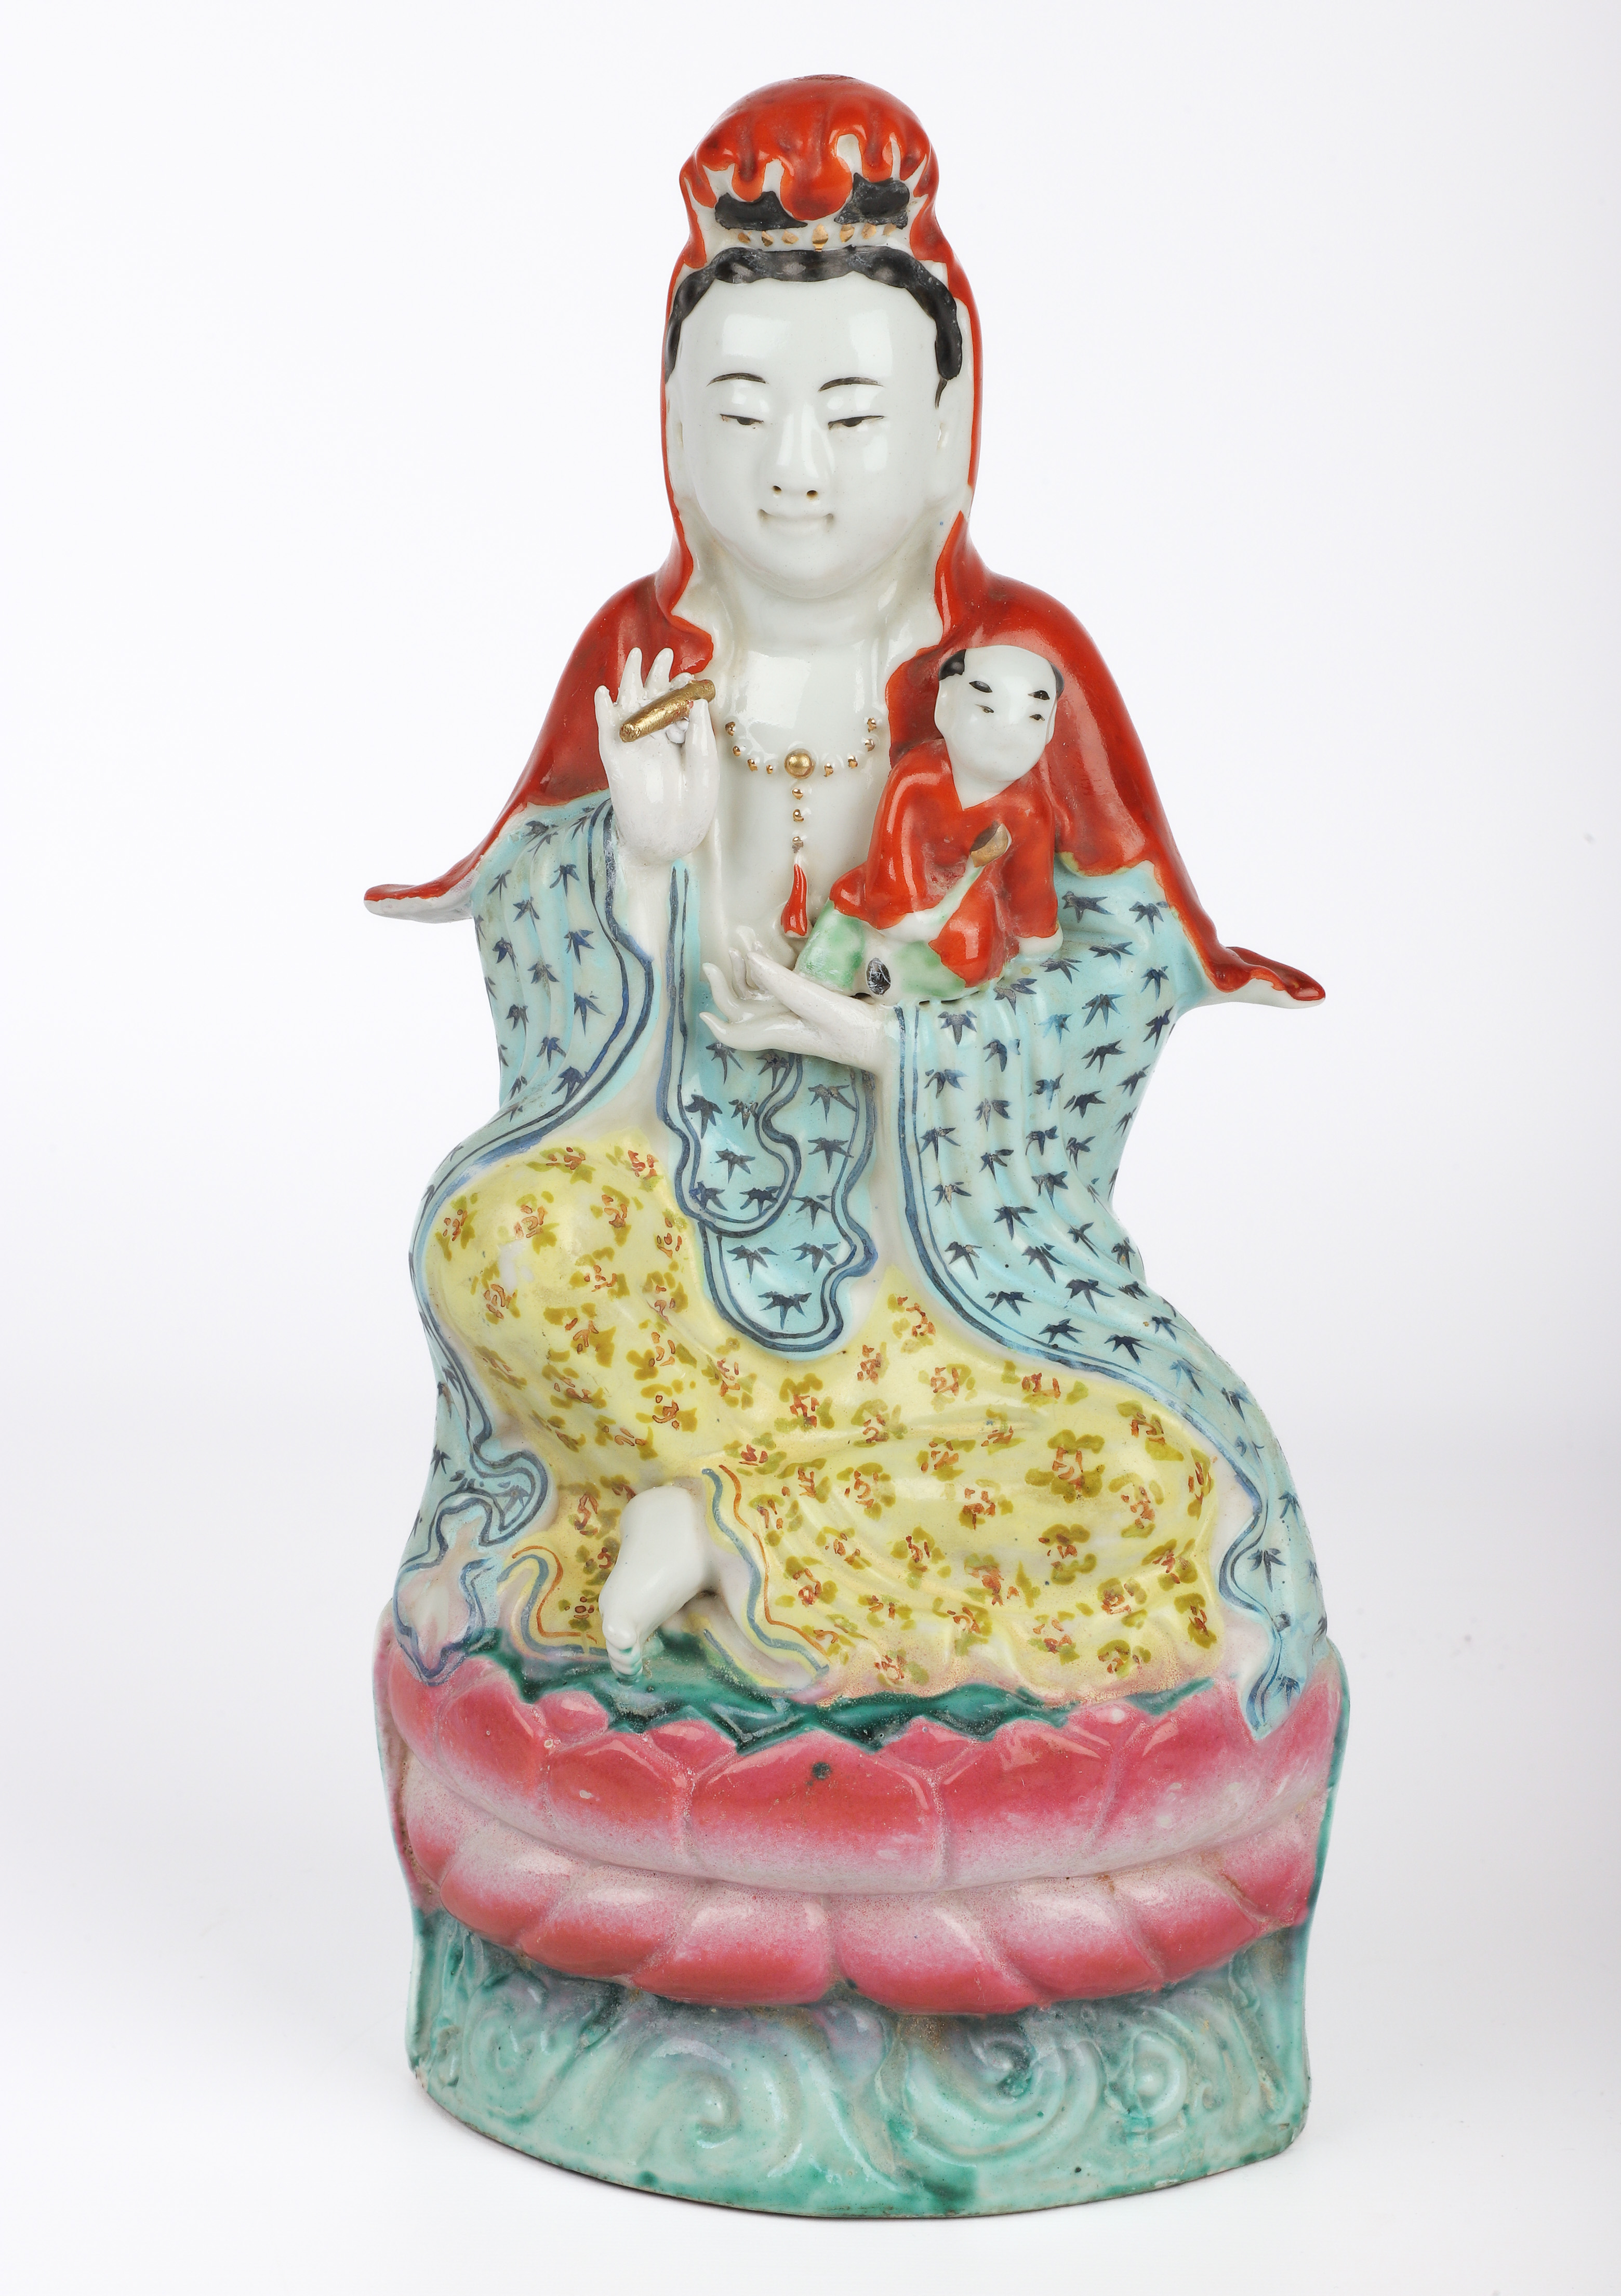 Chinese porcelain figurine Guanyin 3b15e1